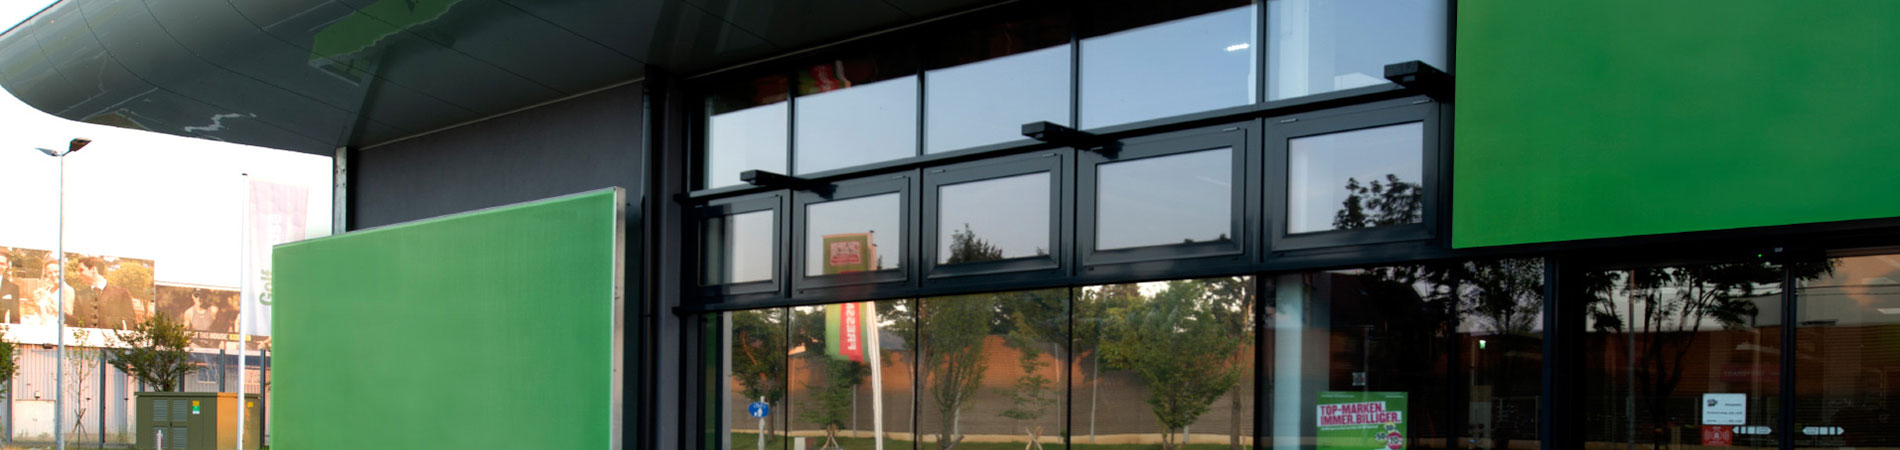 Pfosten-Riegel-Glasfassade mit integrierten RWA-Fenstern